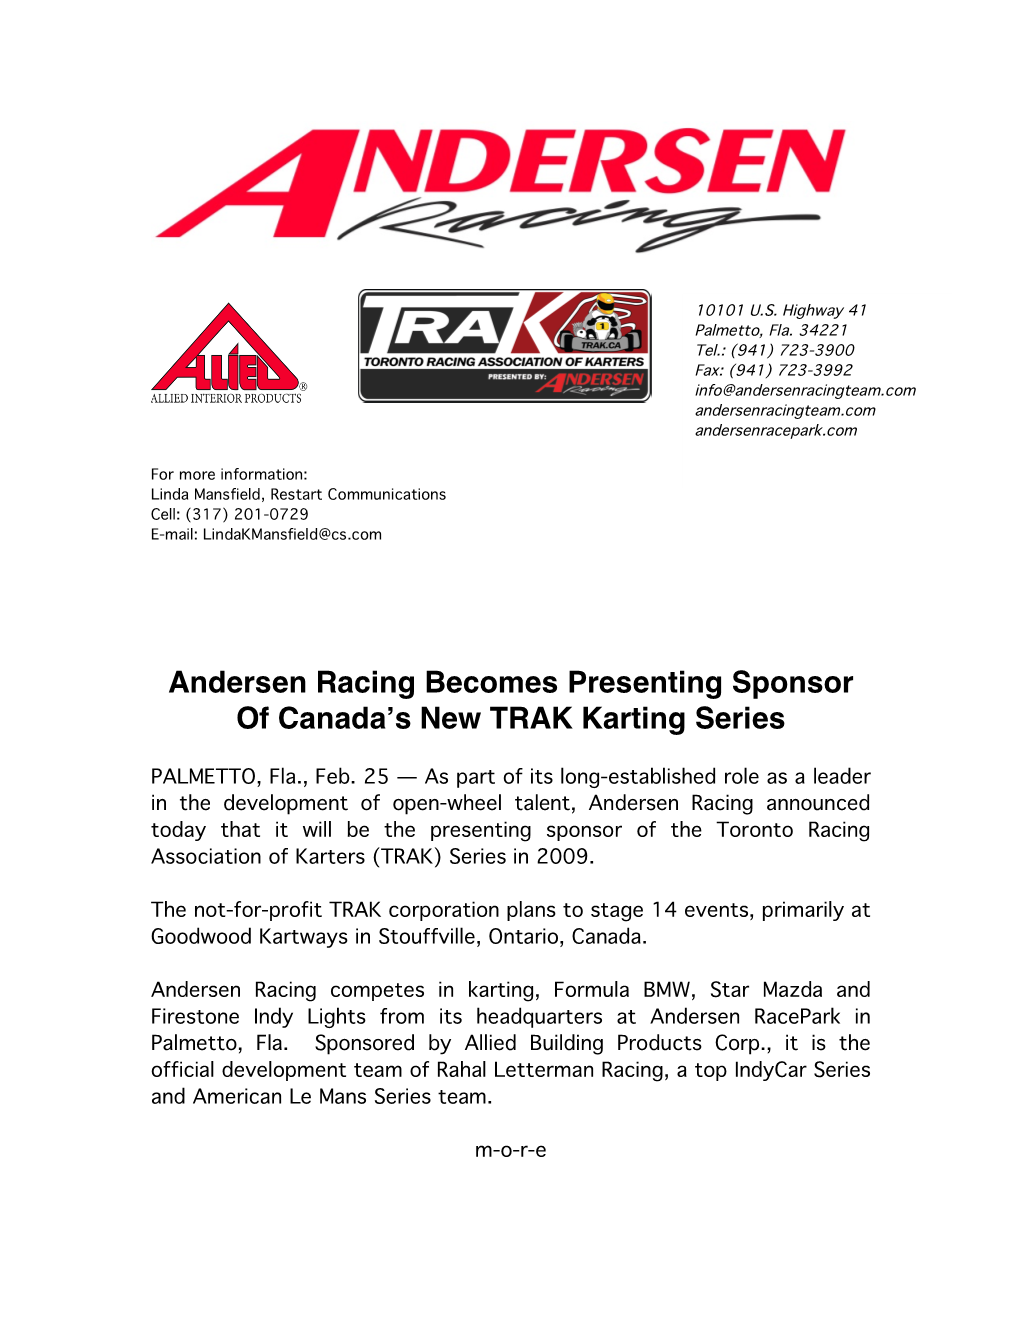 Andersen Racing Becomes Presenting Sponsor of Canada's